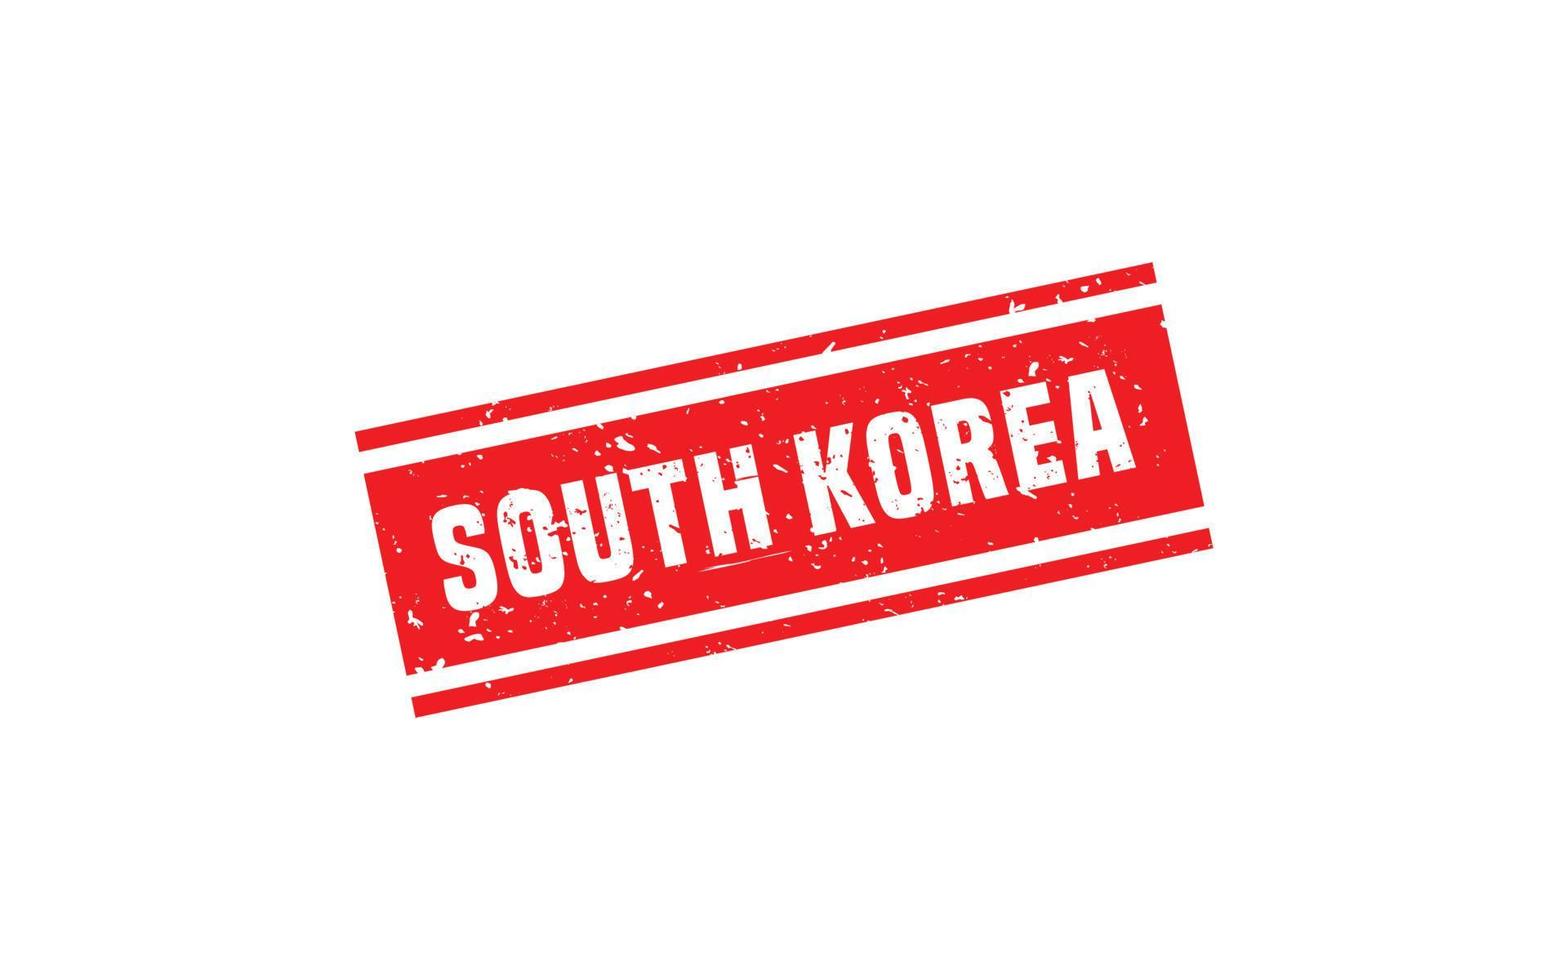 söder korea stämpel sudd med grunge stil på vit bakgrund vektor